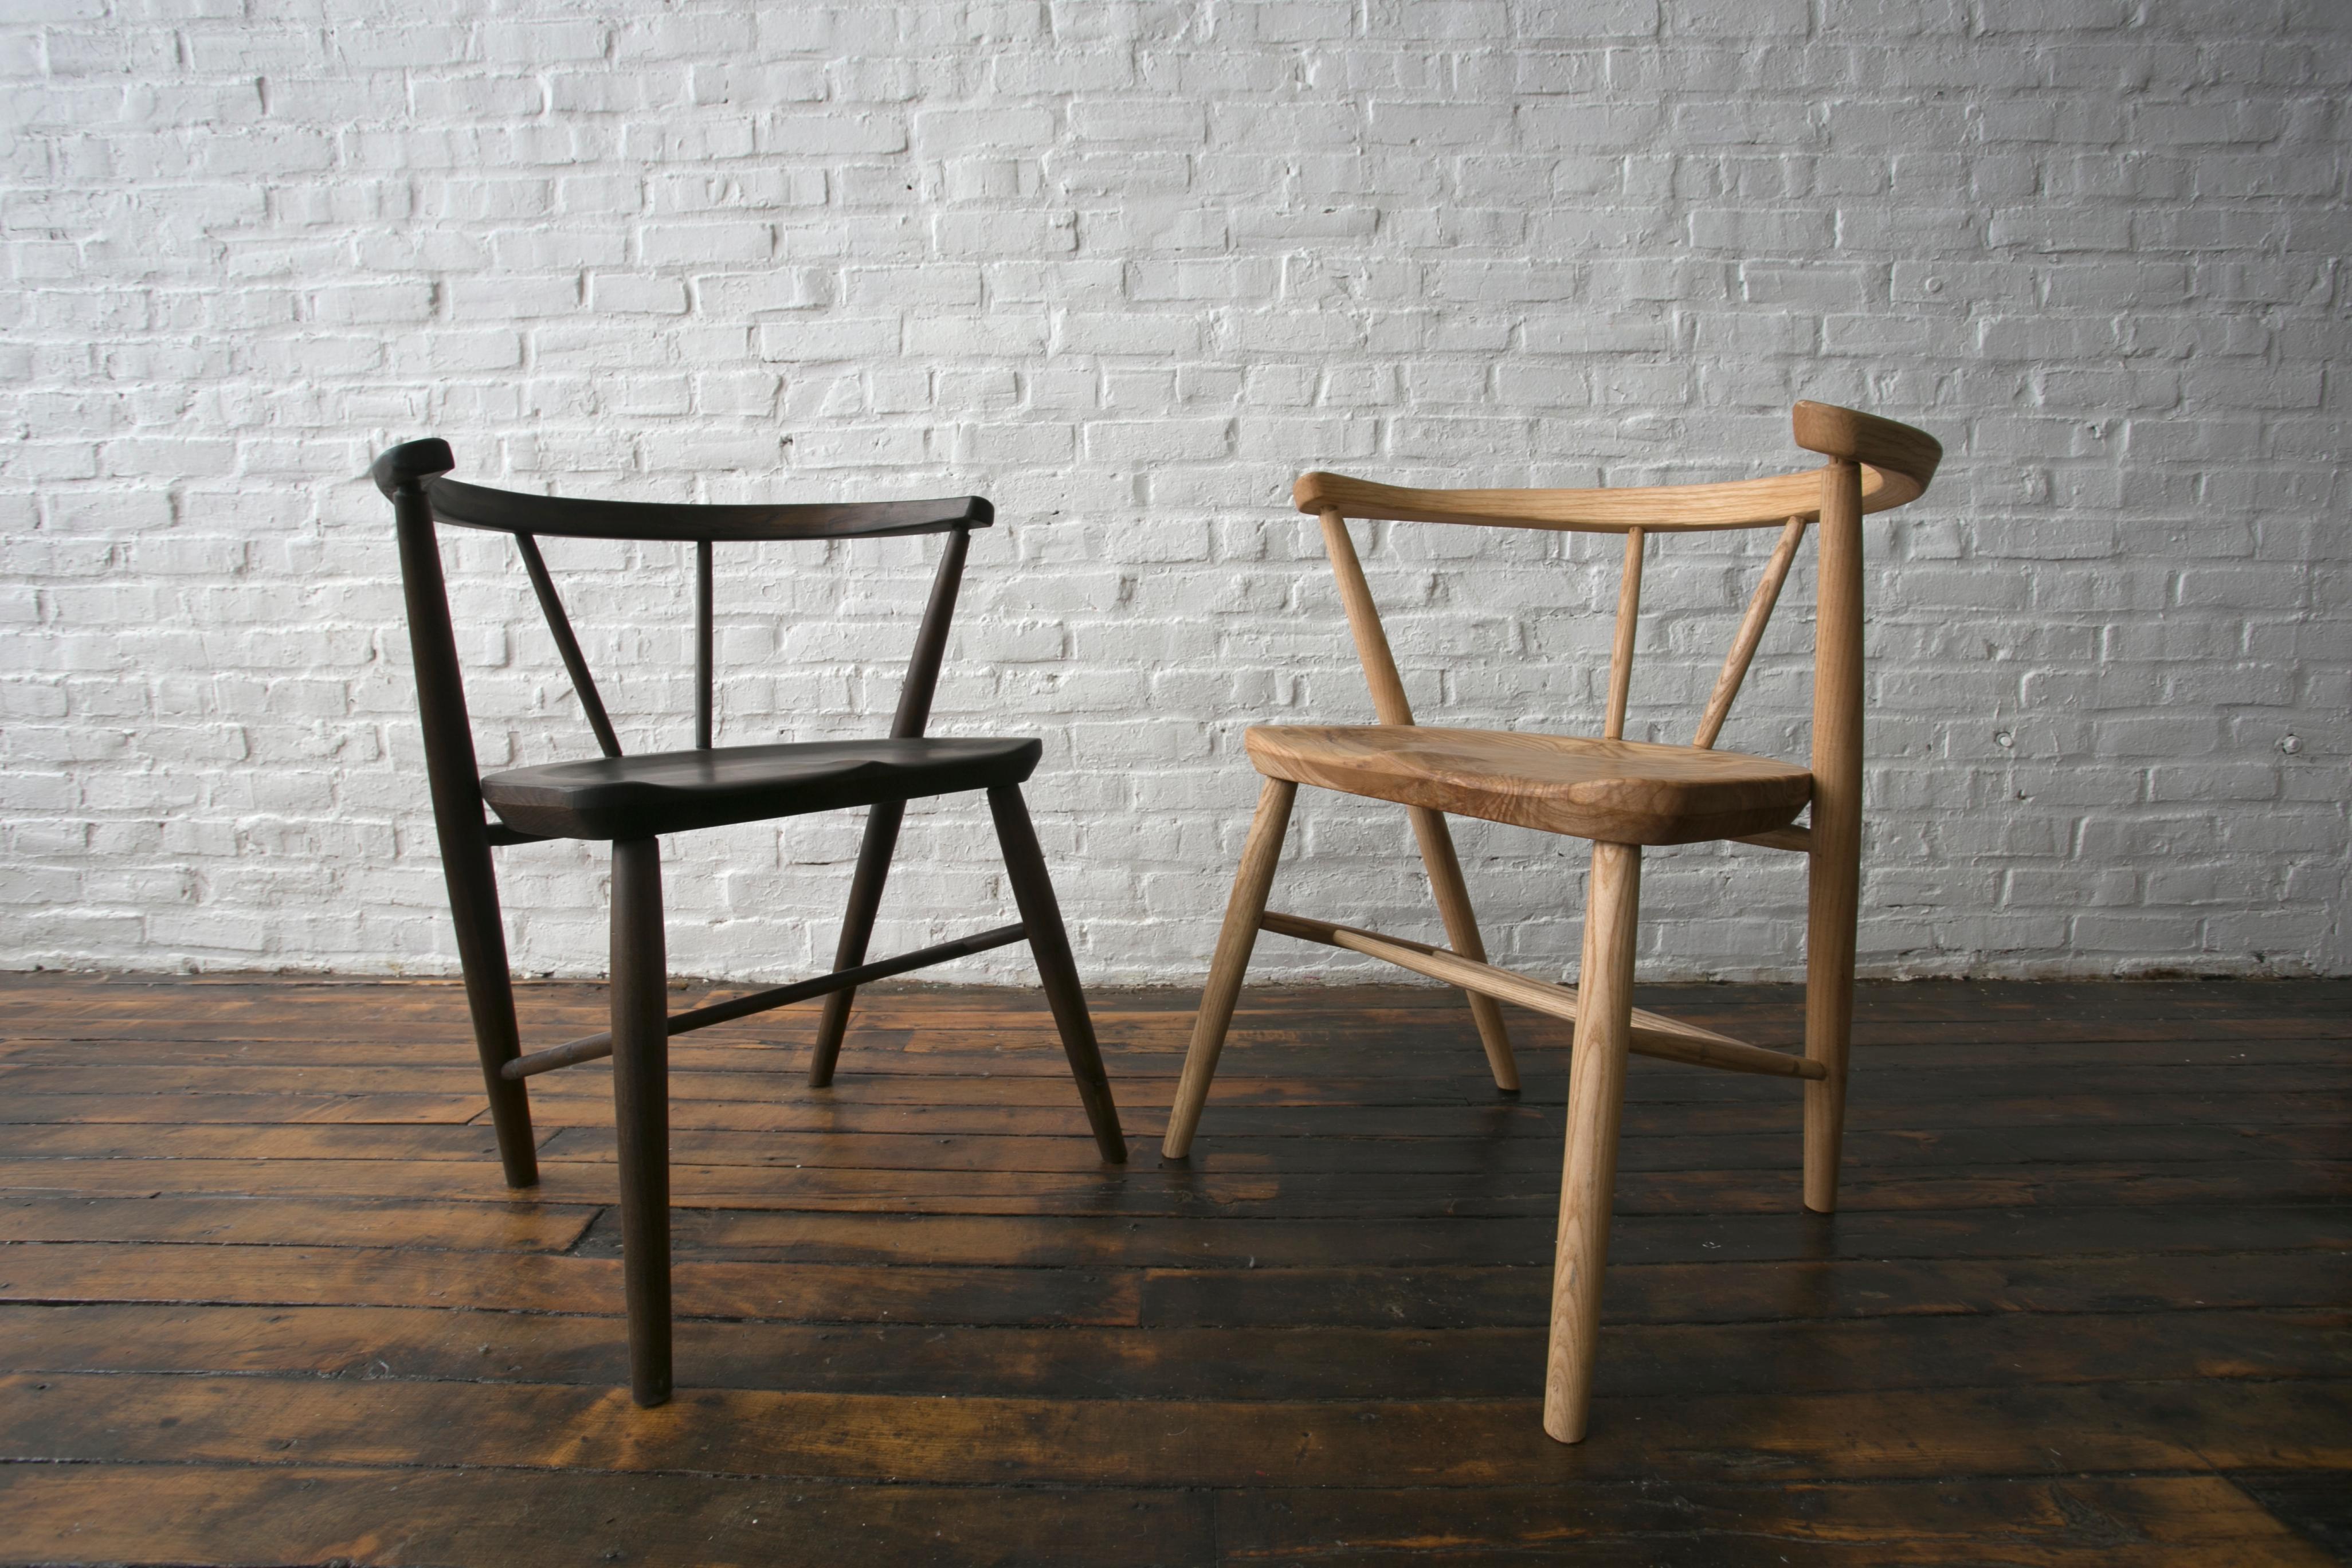 Wir haben Monate damit verbracht, den Yarrow Dining Chair zu entwerfen und zu perfektionieren. Unser Ziel war es, einen bequemen, eleganten Stuhl zu schaffen, der ein breites Spektrum an unterschiedlichen Körpern anspricht. Wir wollen, dass dieser